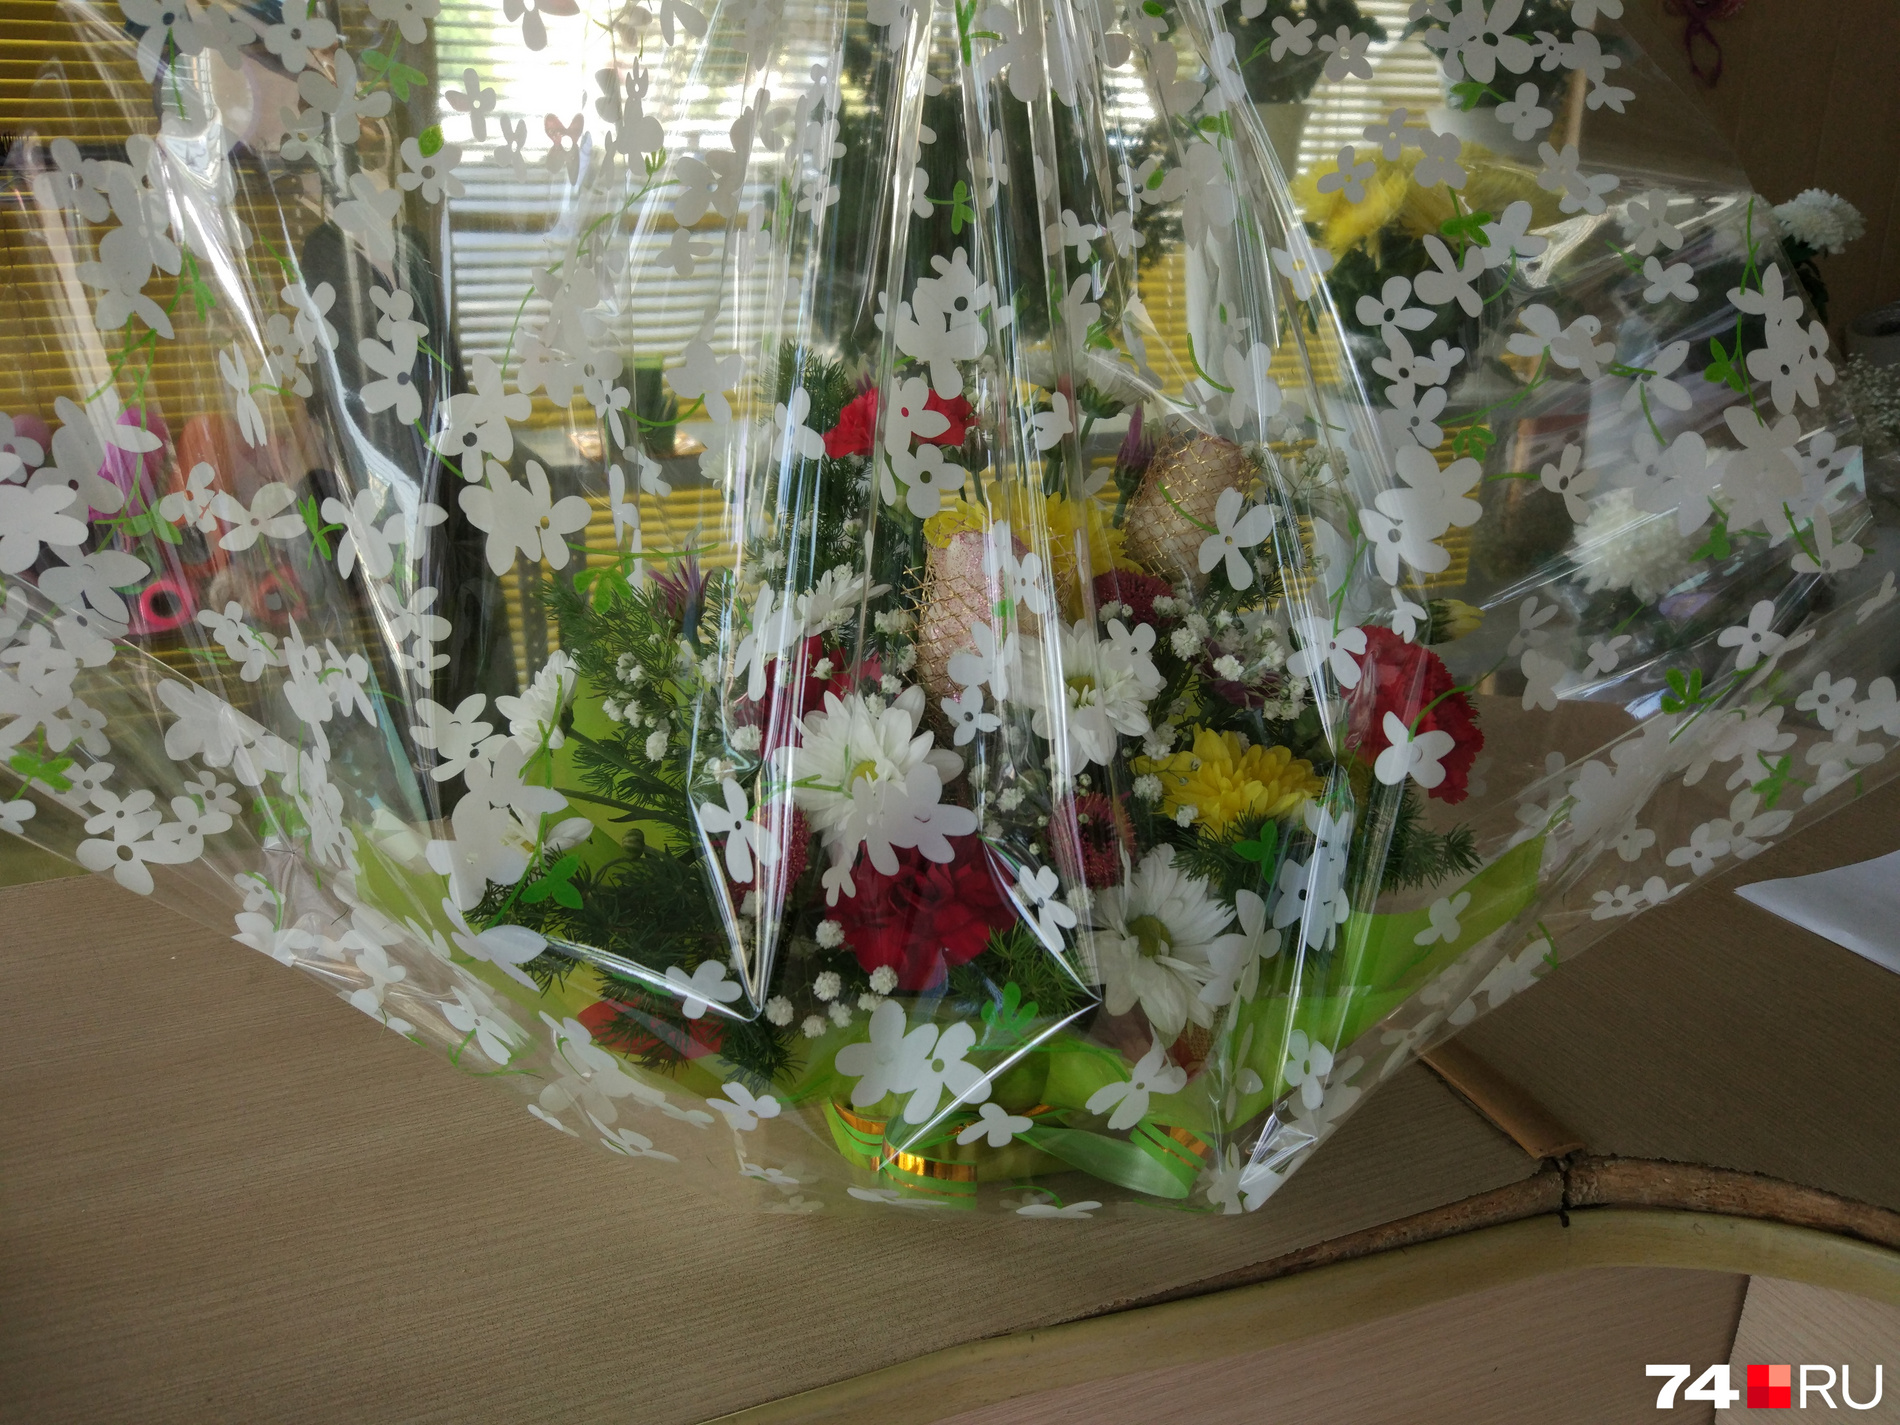 Плёнка, сеточки, корзинка и блёстки — в этом букете собраны почти все уловки флористов